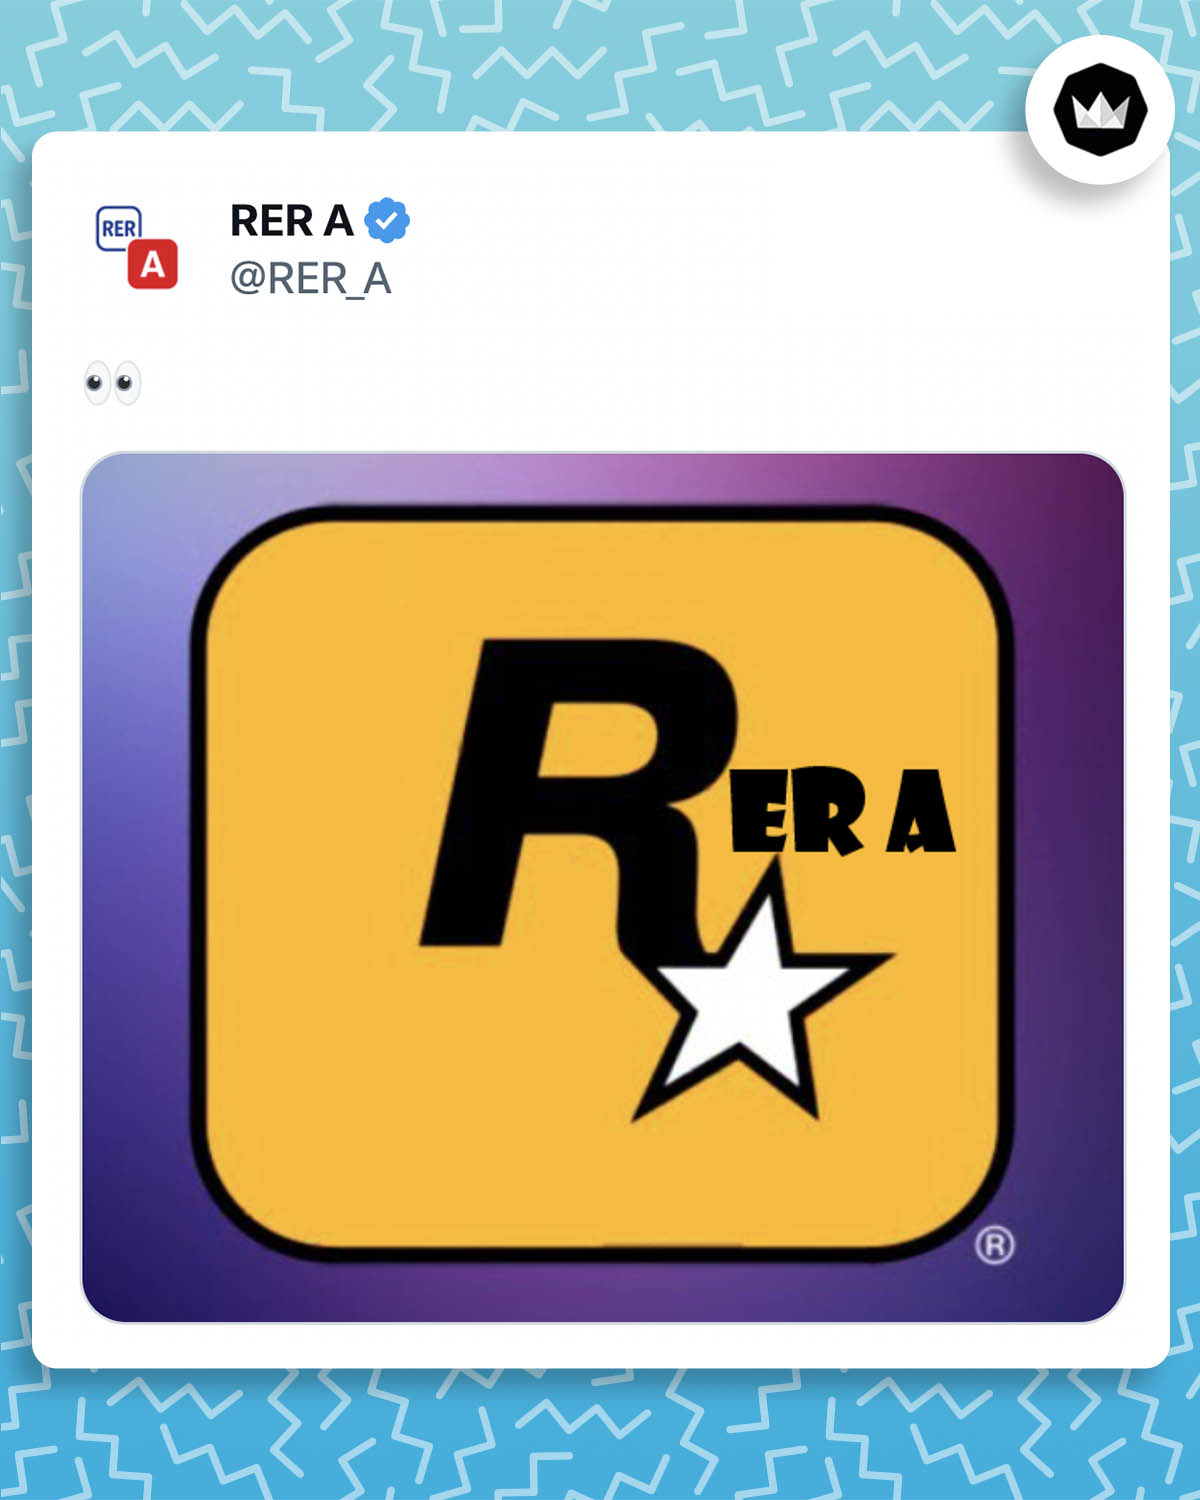 Tweet du RERA avec le logo de Rockstar Games détourné en "RERA". Il s'agit d'une réaction au teaser de GTA VI, un jeu de Rockstar Games.